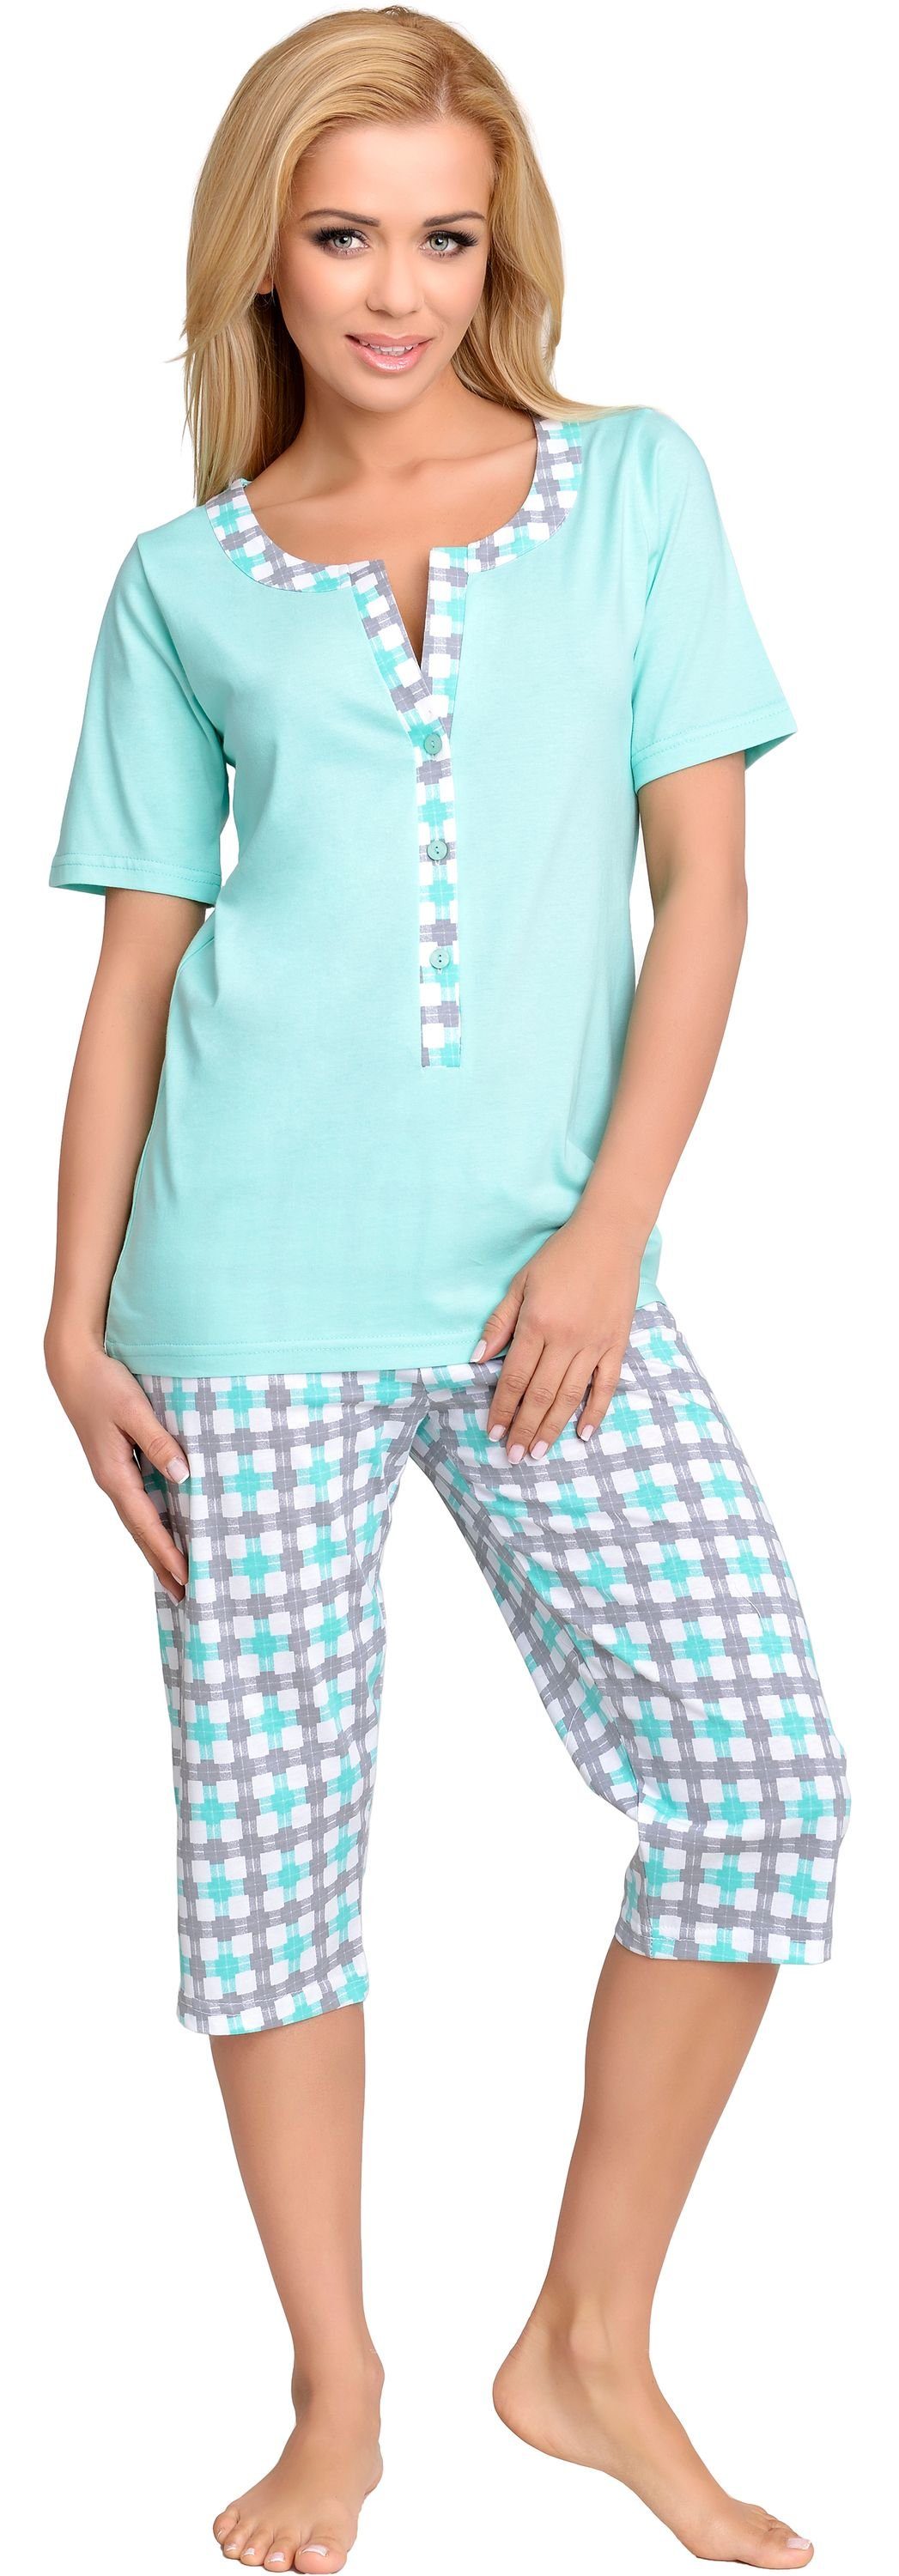 Minze Schlafanzug Mammy H2L2N2 Damen Stillpyjama Umstandspyjama Be